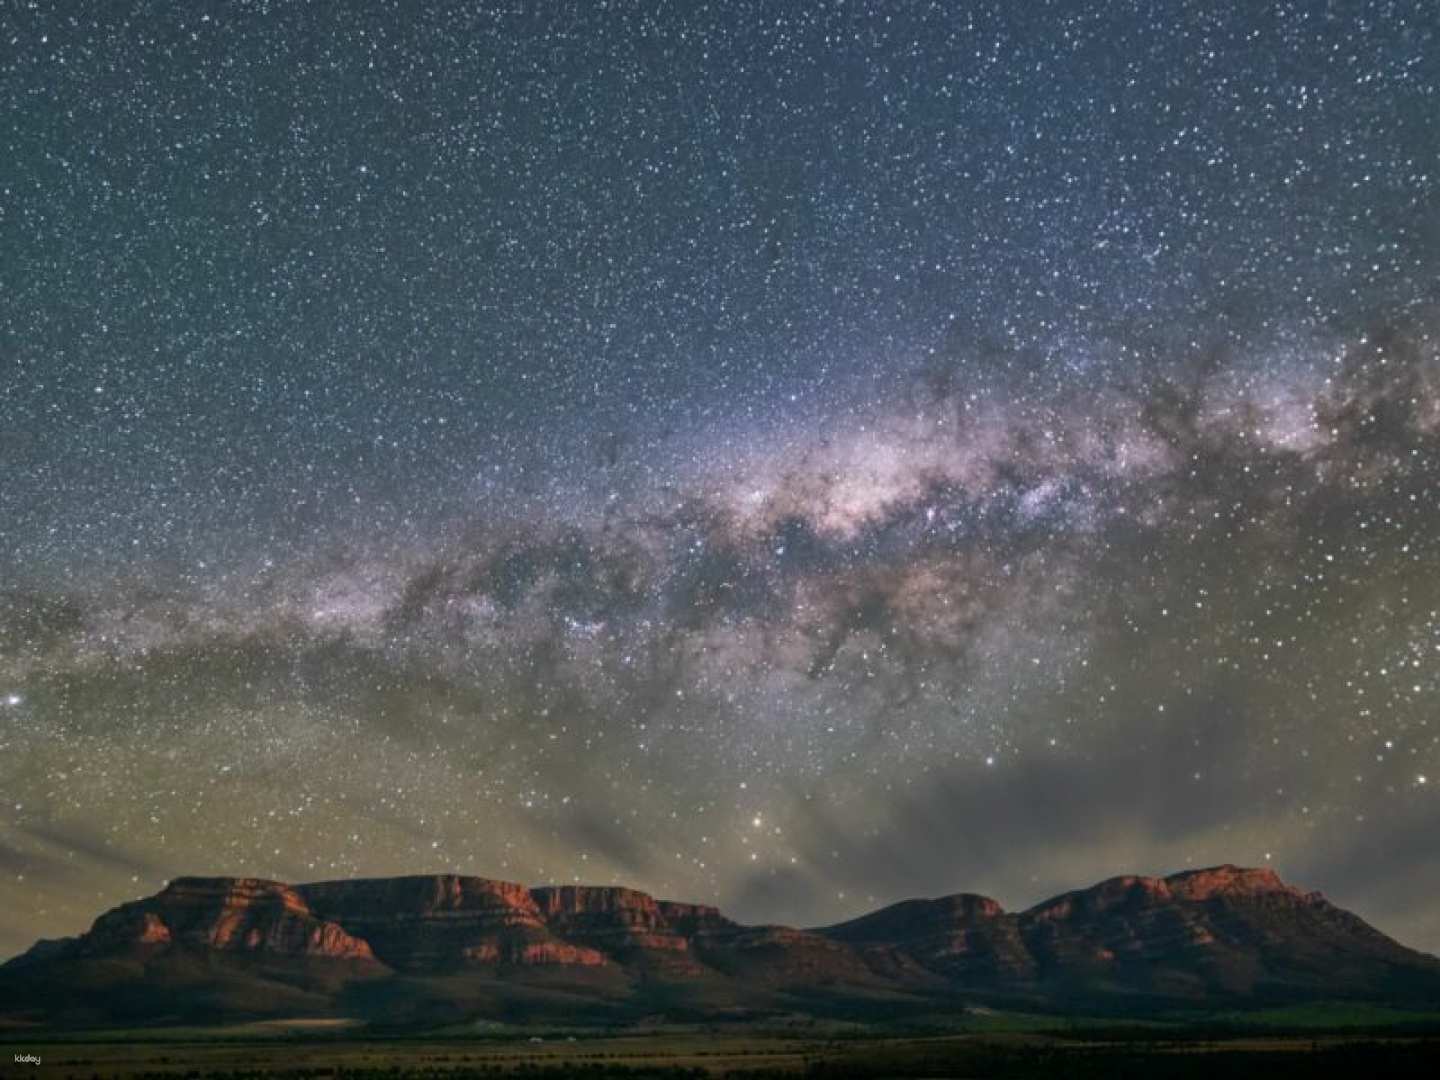 8-Day Uluru to Adelaide Tour | South Australia